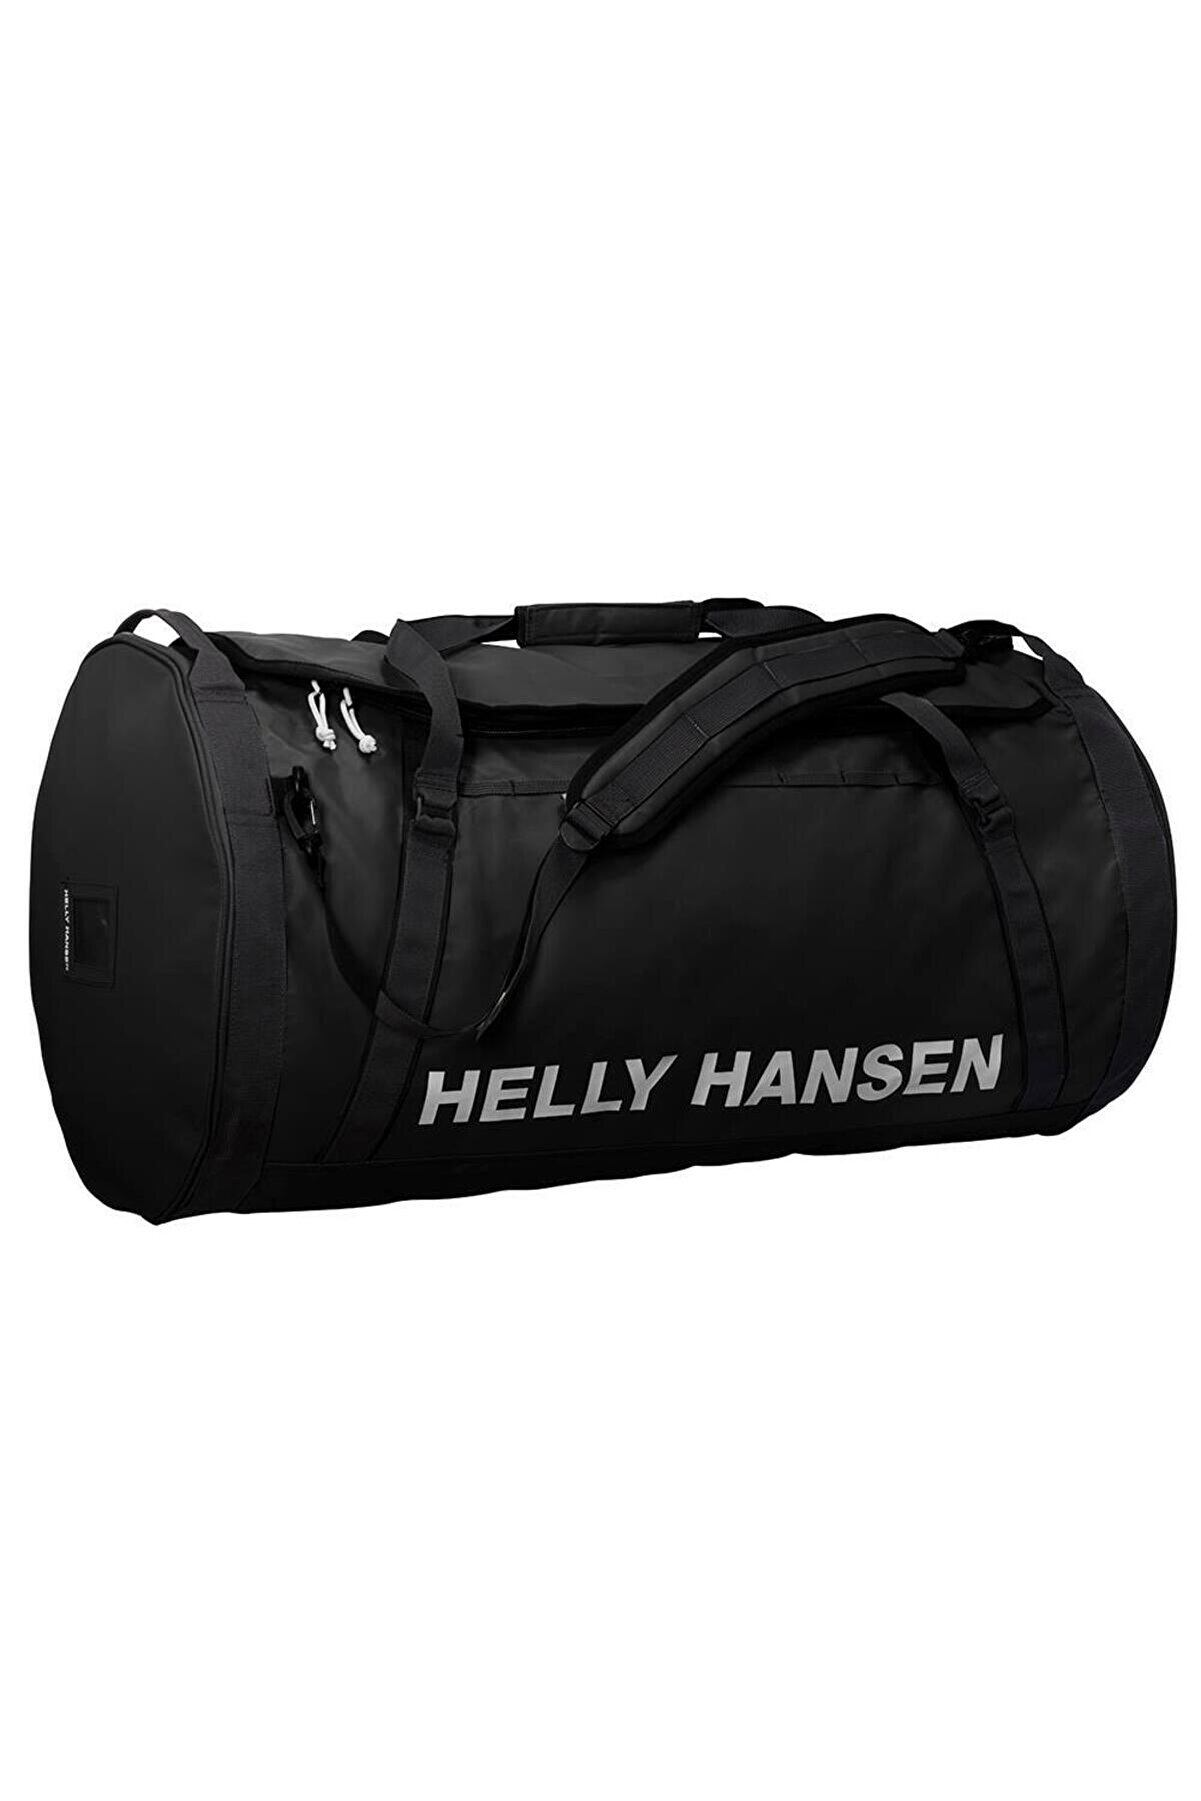 Helly Hansen Hh Hh Duffel Bag 2 50l